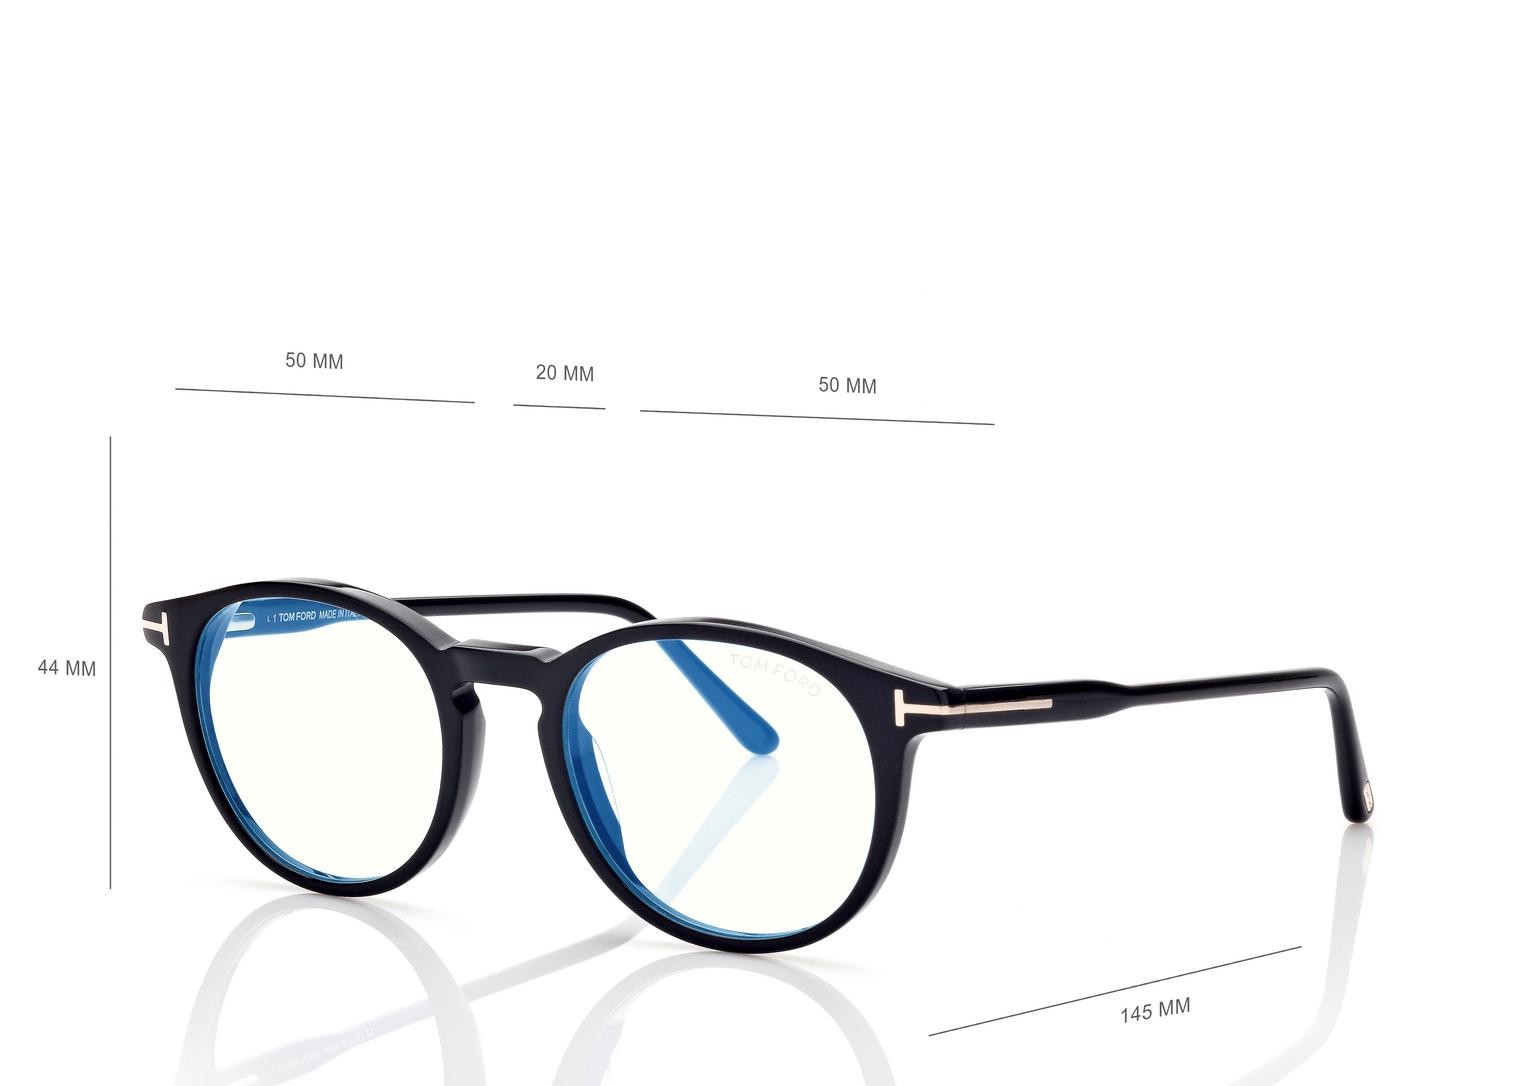 Tom Ford 5823HB 001 - Oculos com Blue Block e Clip On